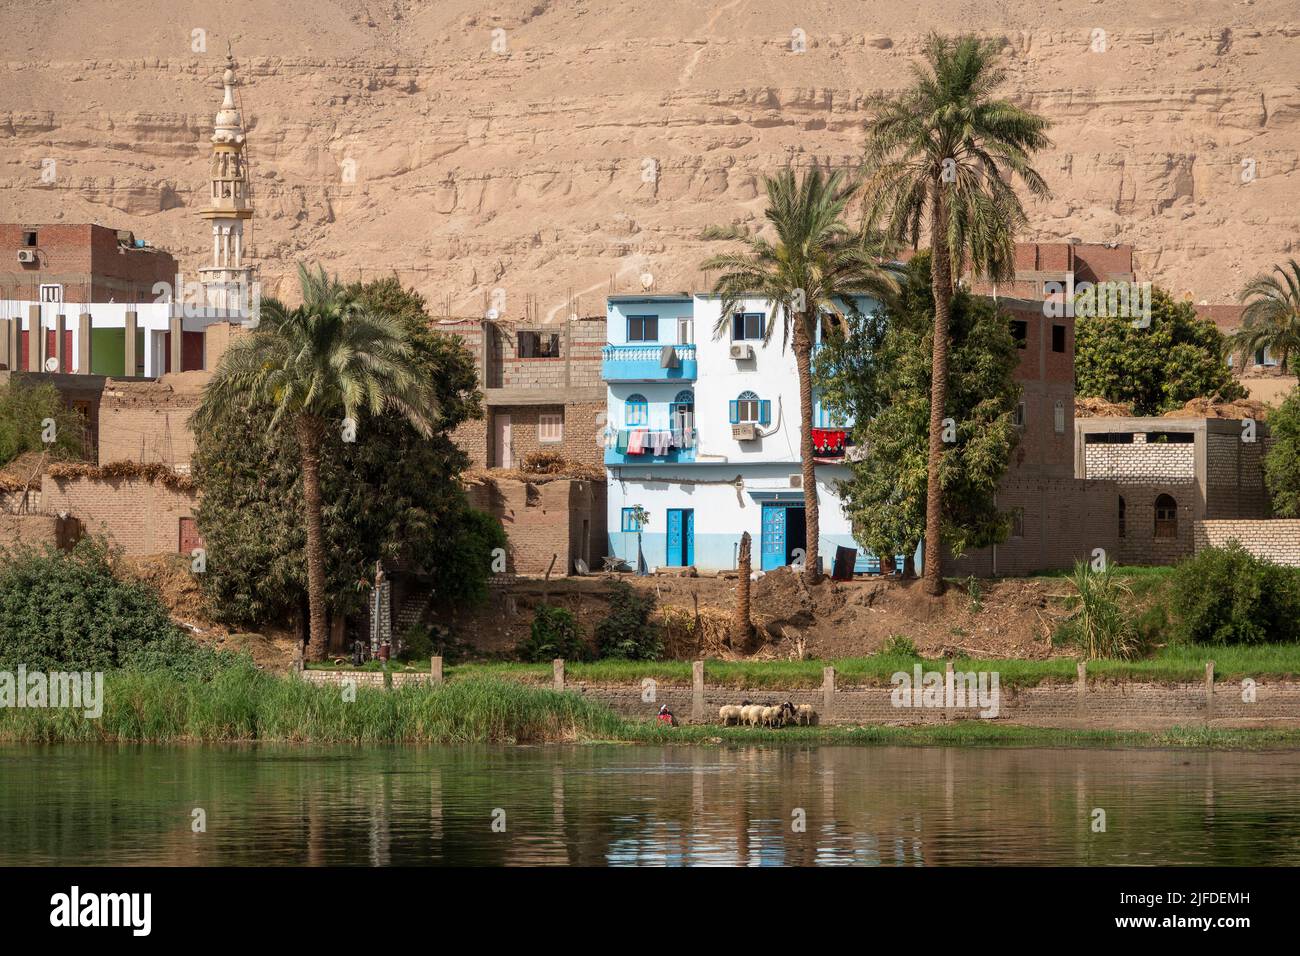 Propiedad doméstica a orillas del río Nilo, Egipto Foto de stock